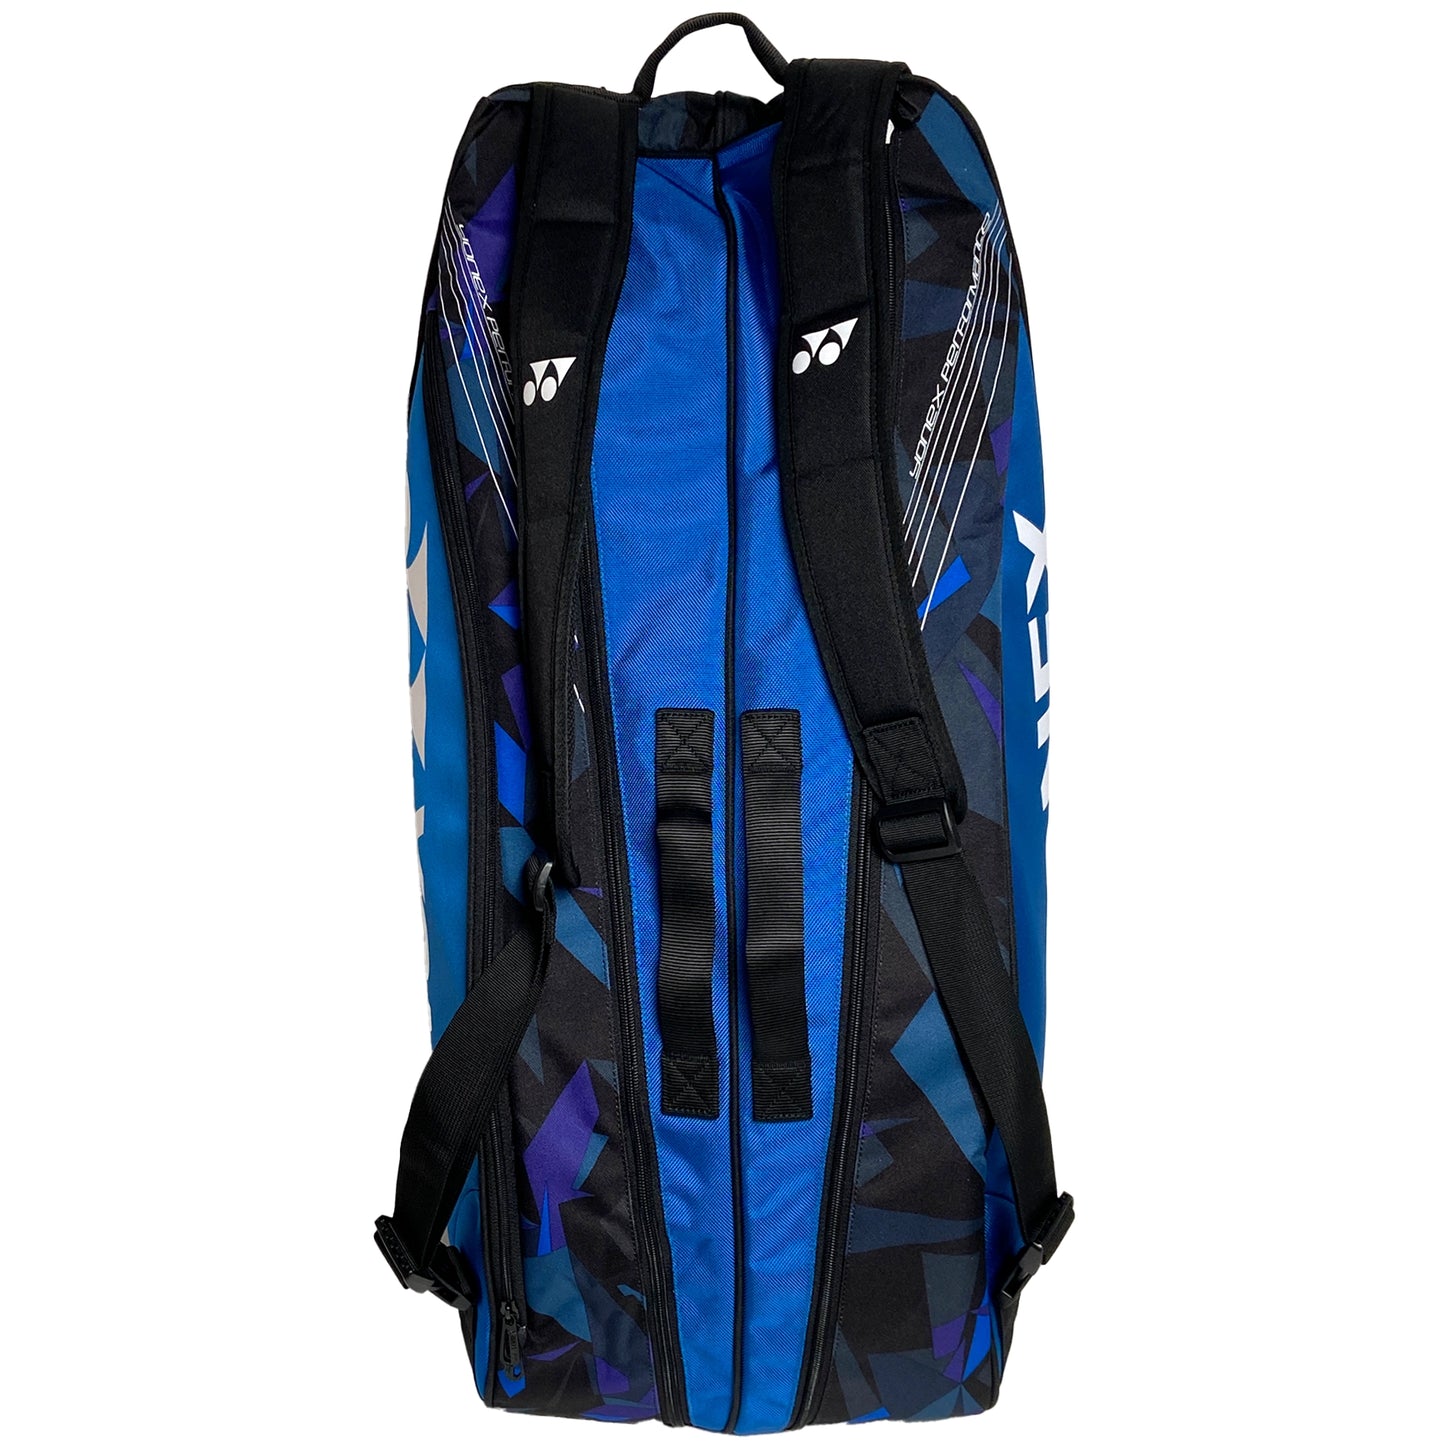 Yonex sac Pro 6 raquettes (92226EX) Bleu